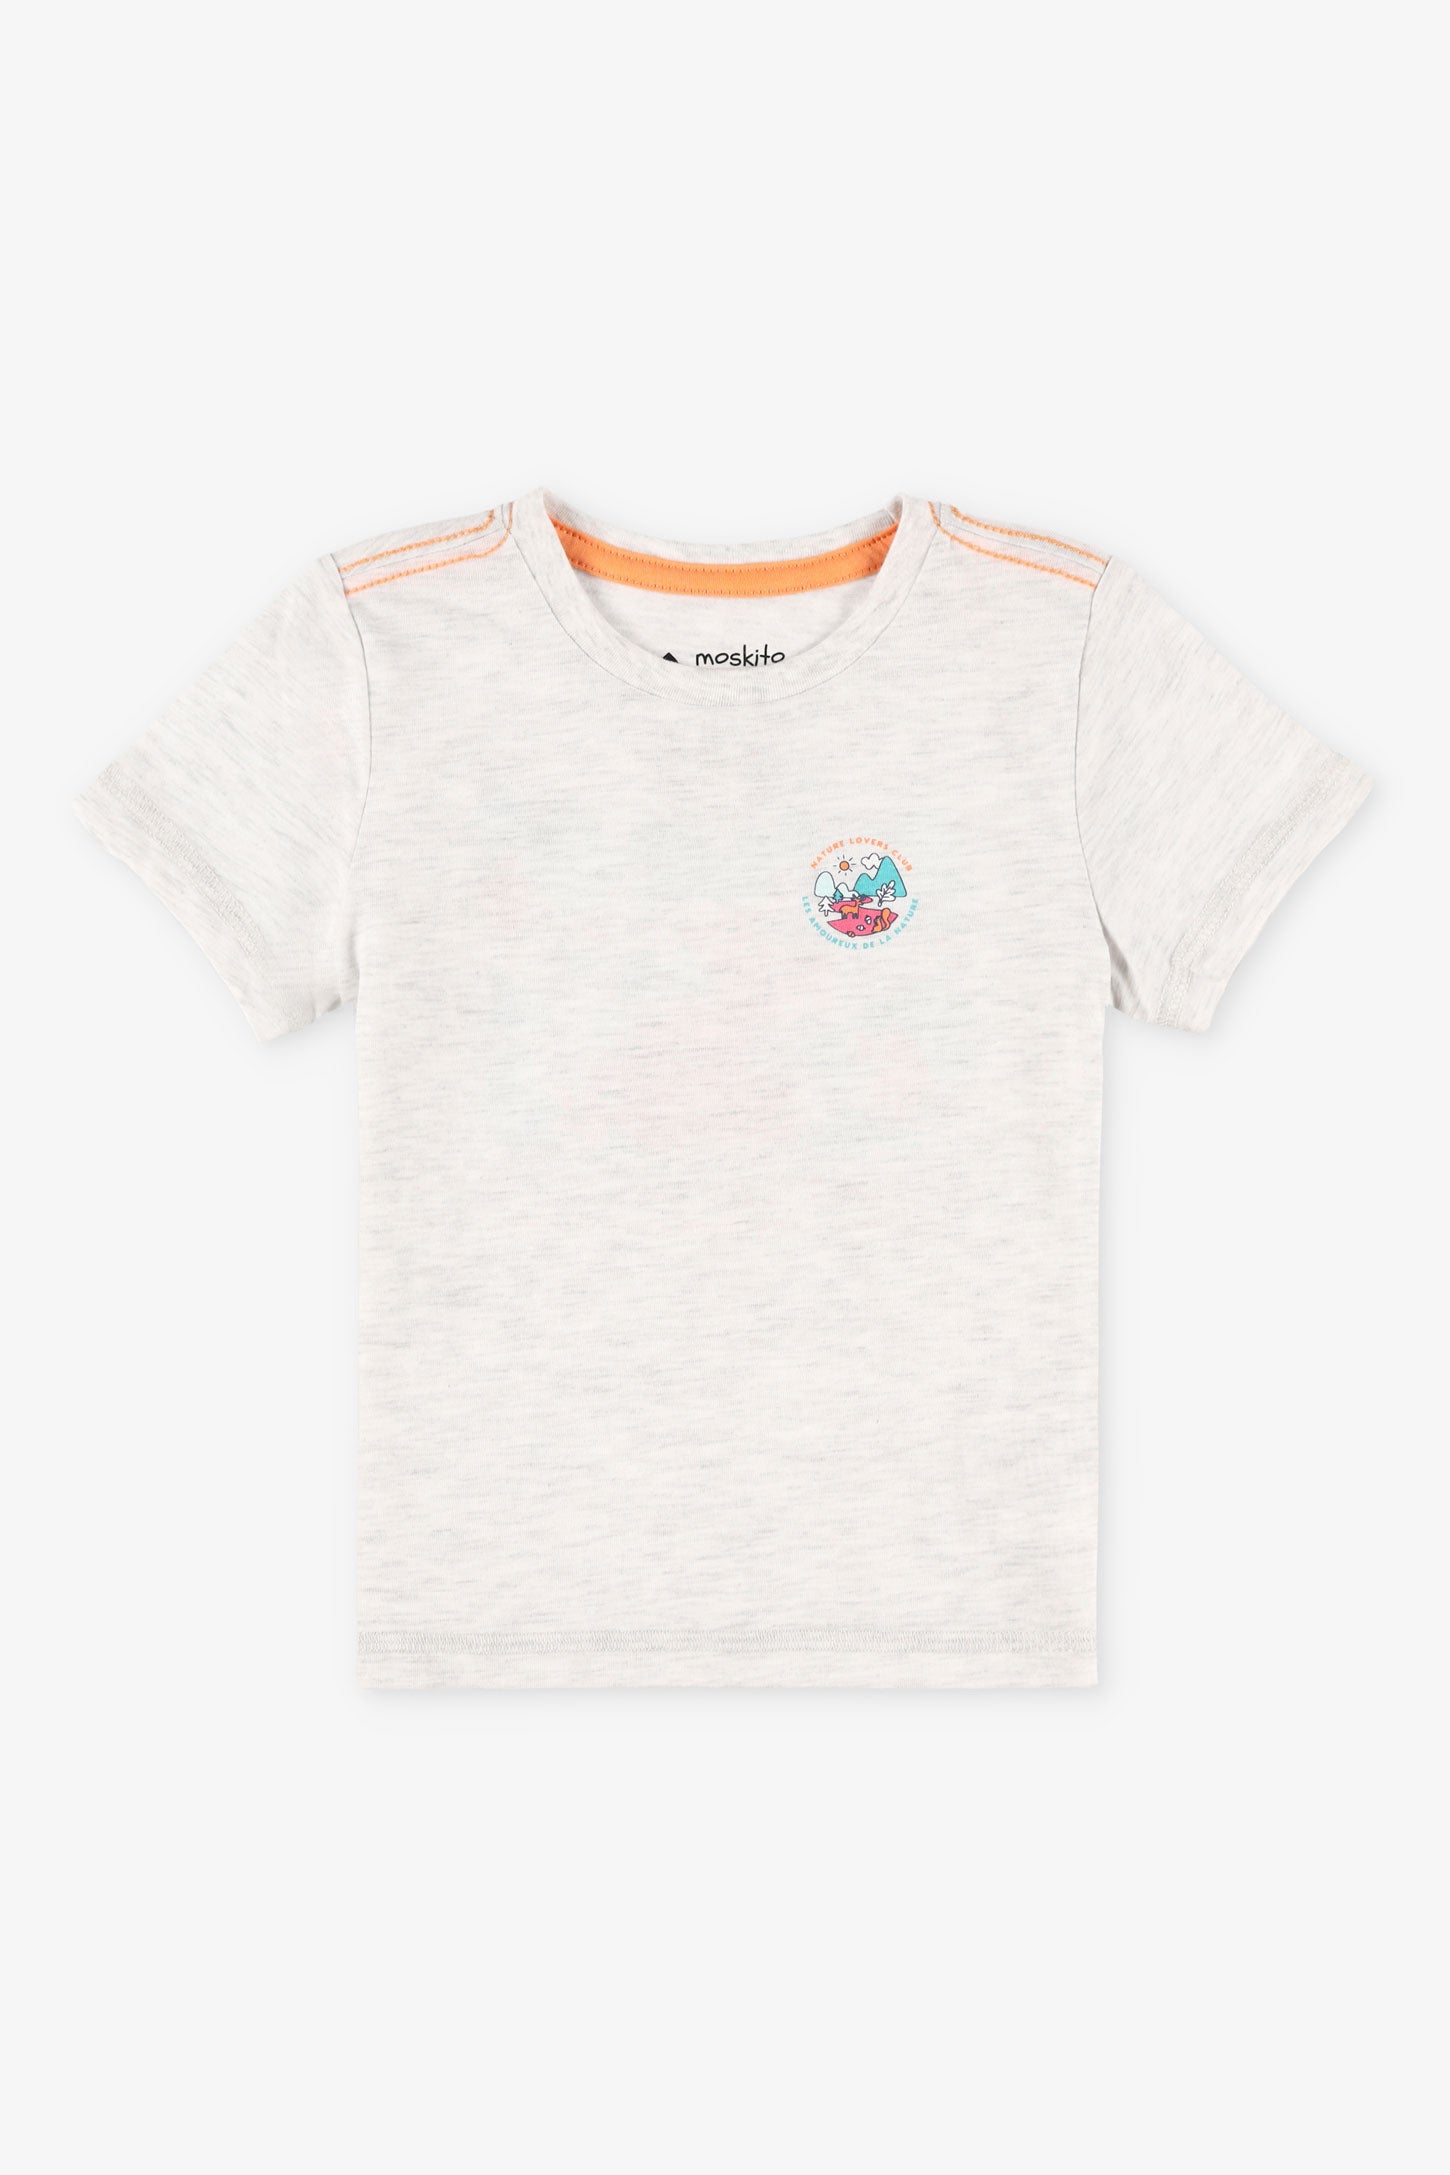 T-shirt col rond coton bio BM, 2T-3T, 2/25$ - Bébé garçon && GRIS MIXTE